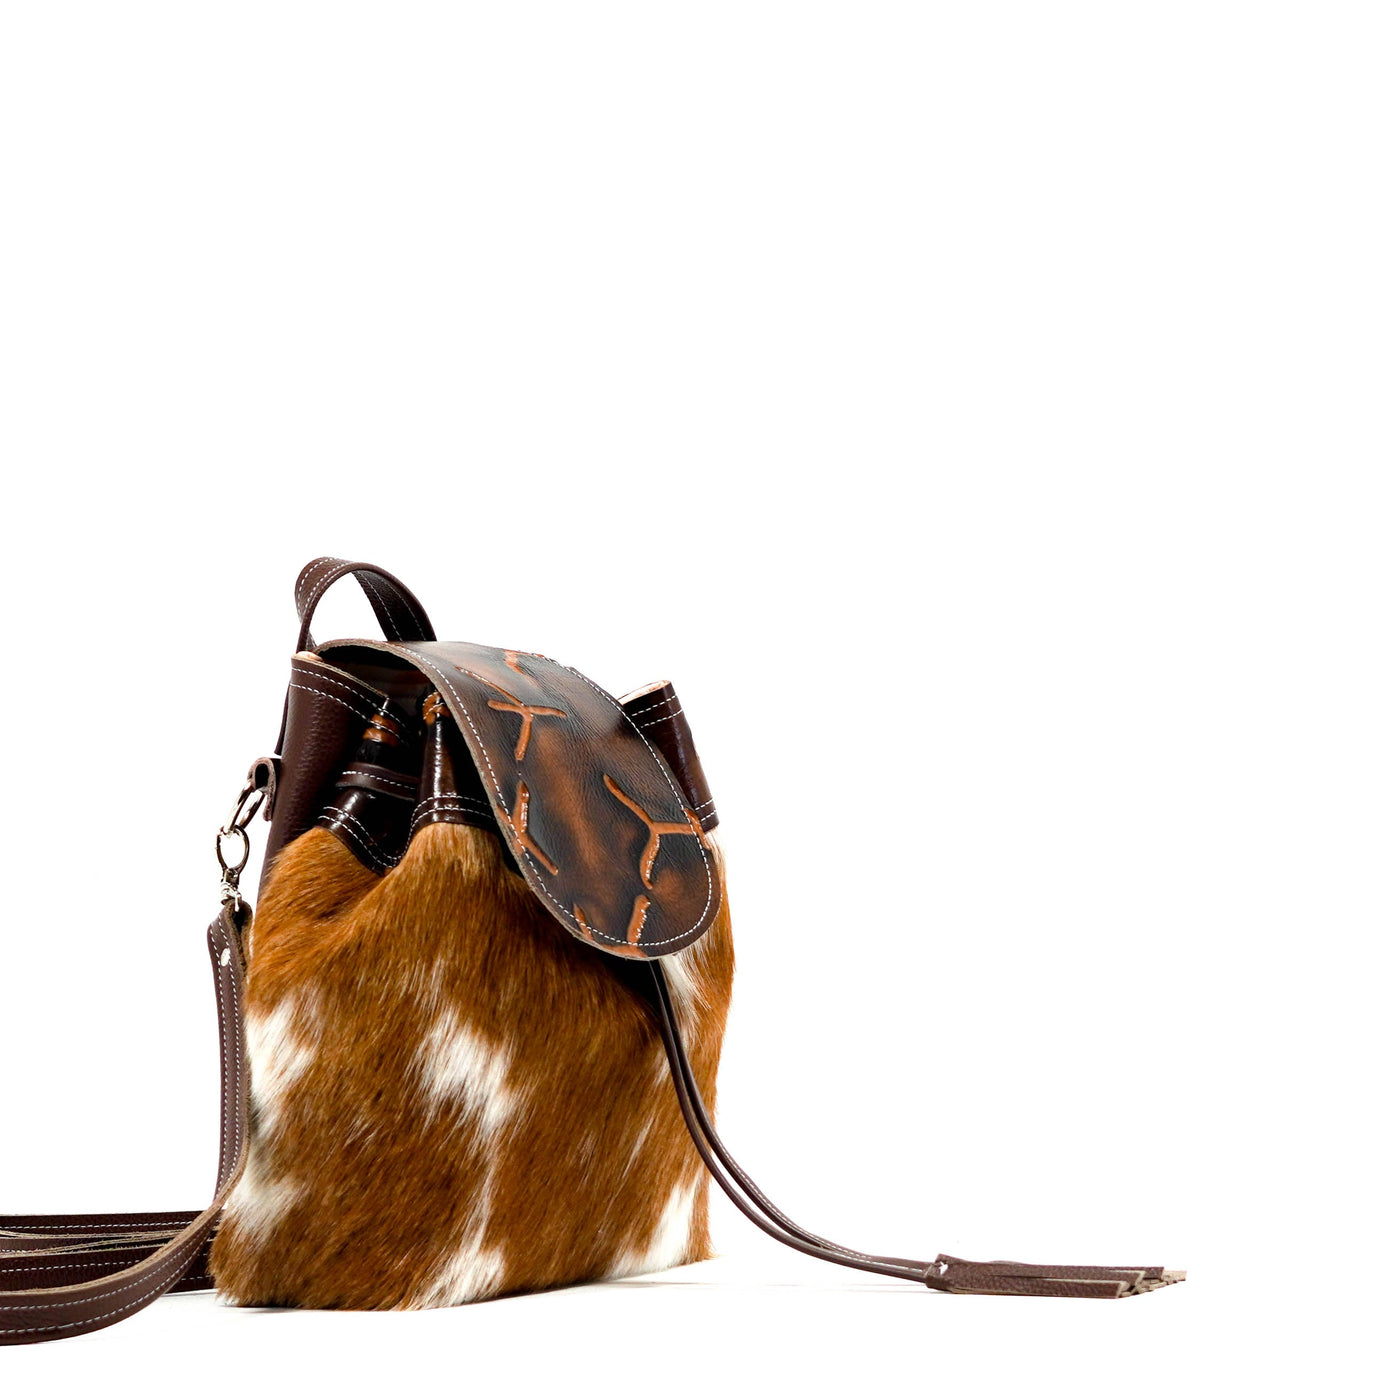 Mini Kelsea Backpack - Longhorn w/ Burnt Brands-Mini Kelsea Backpack-Western-Cowhide-Bags-Handmade-Products-Gifts-Dancing Cactus Designs